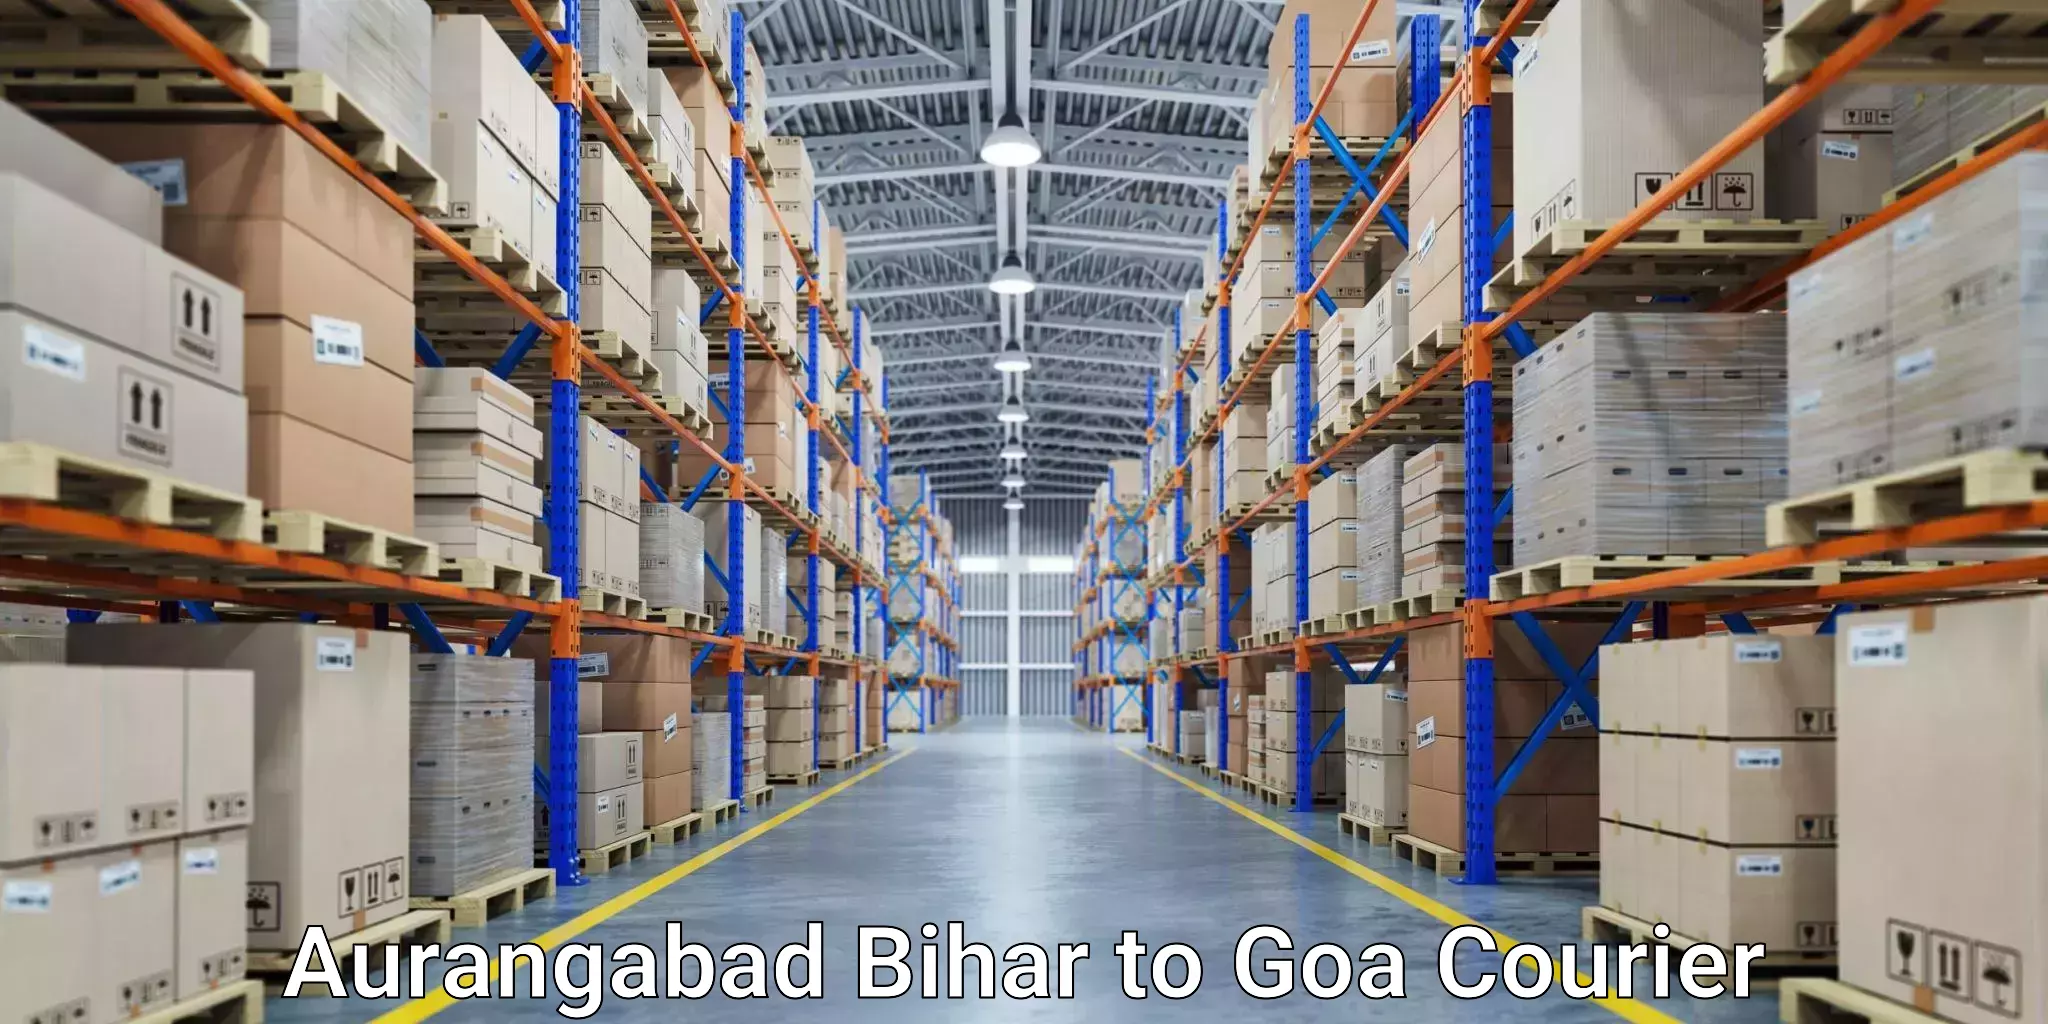 Flexible delivery schedules Aurangabad Bihar to Goa